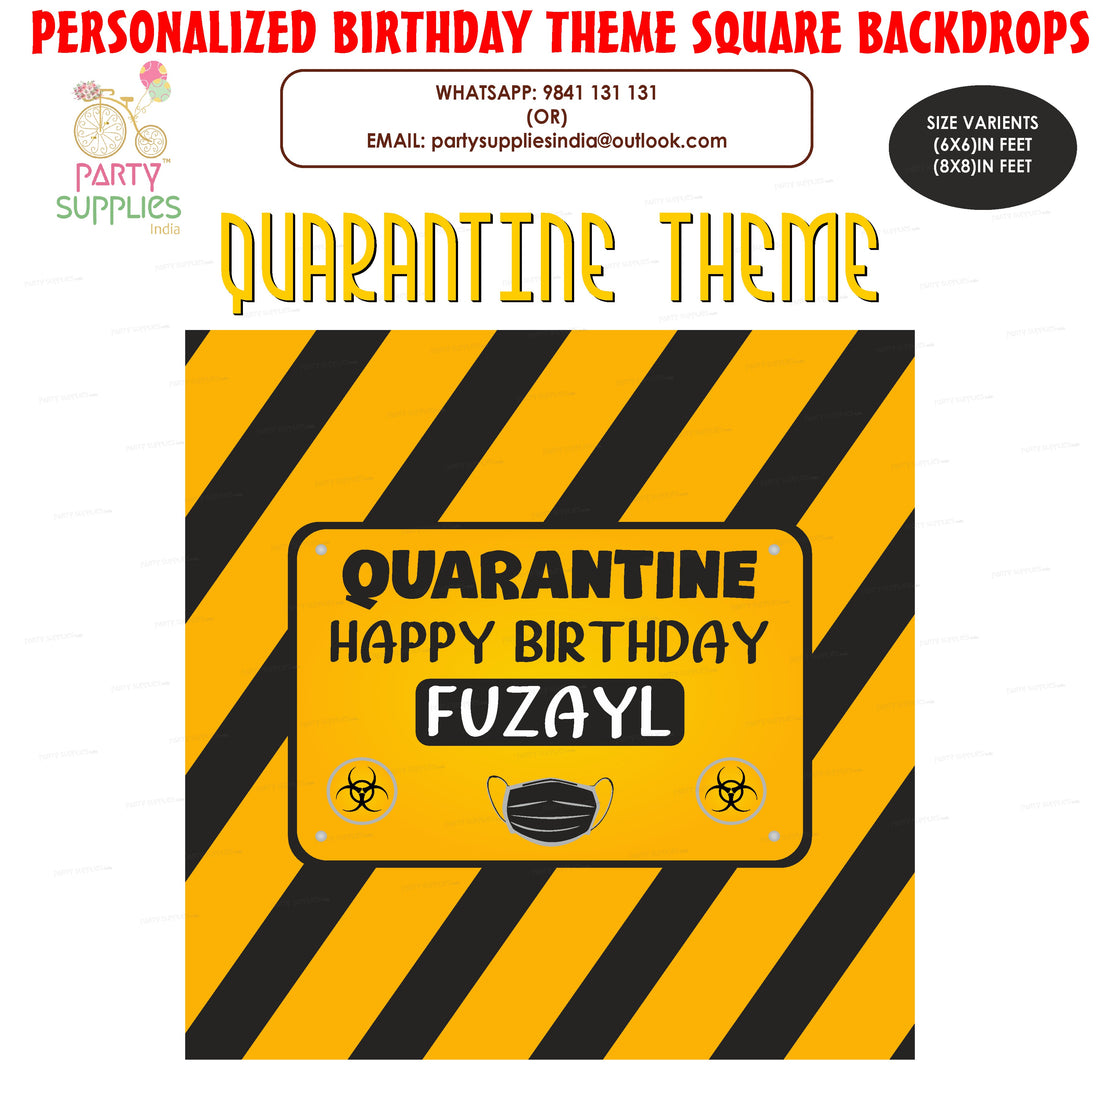 PSI Quarantine Theme Square Backdrop